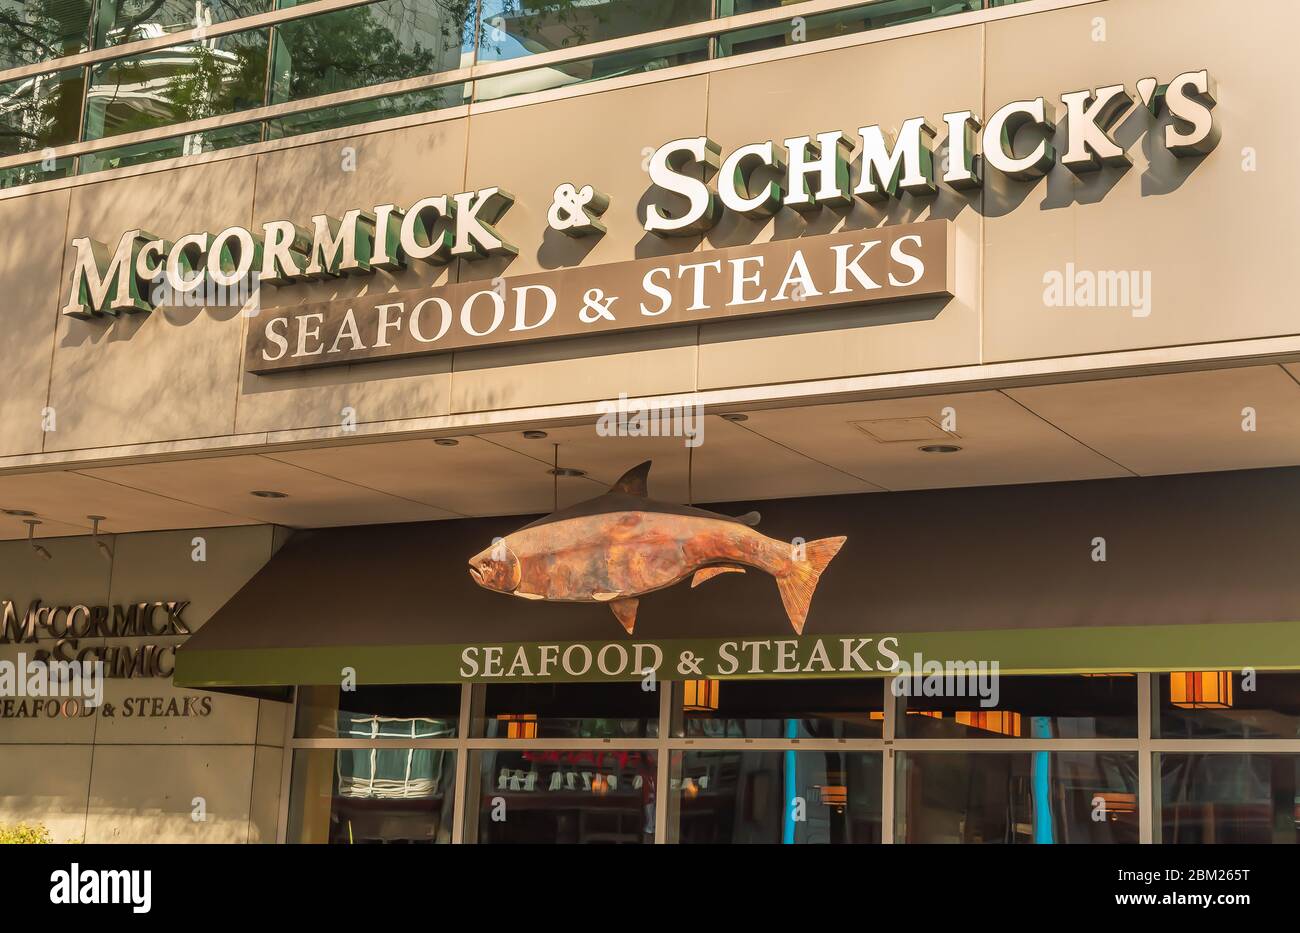 Charlotte, NC/USA - 26. Mai 2019: Fassade des Restaurants 'McCormick & Schmick's Seafood & Steaks' mit Marke in weißen Buchstaben und hängendem Fischschild. Stockfoto